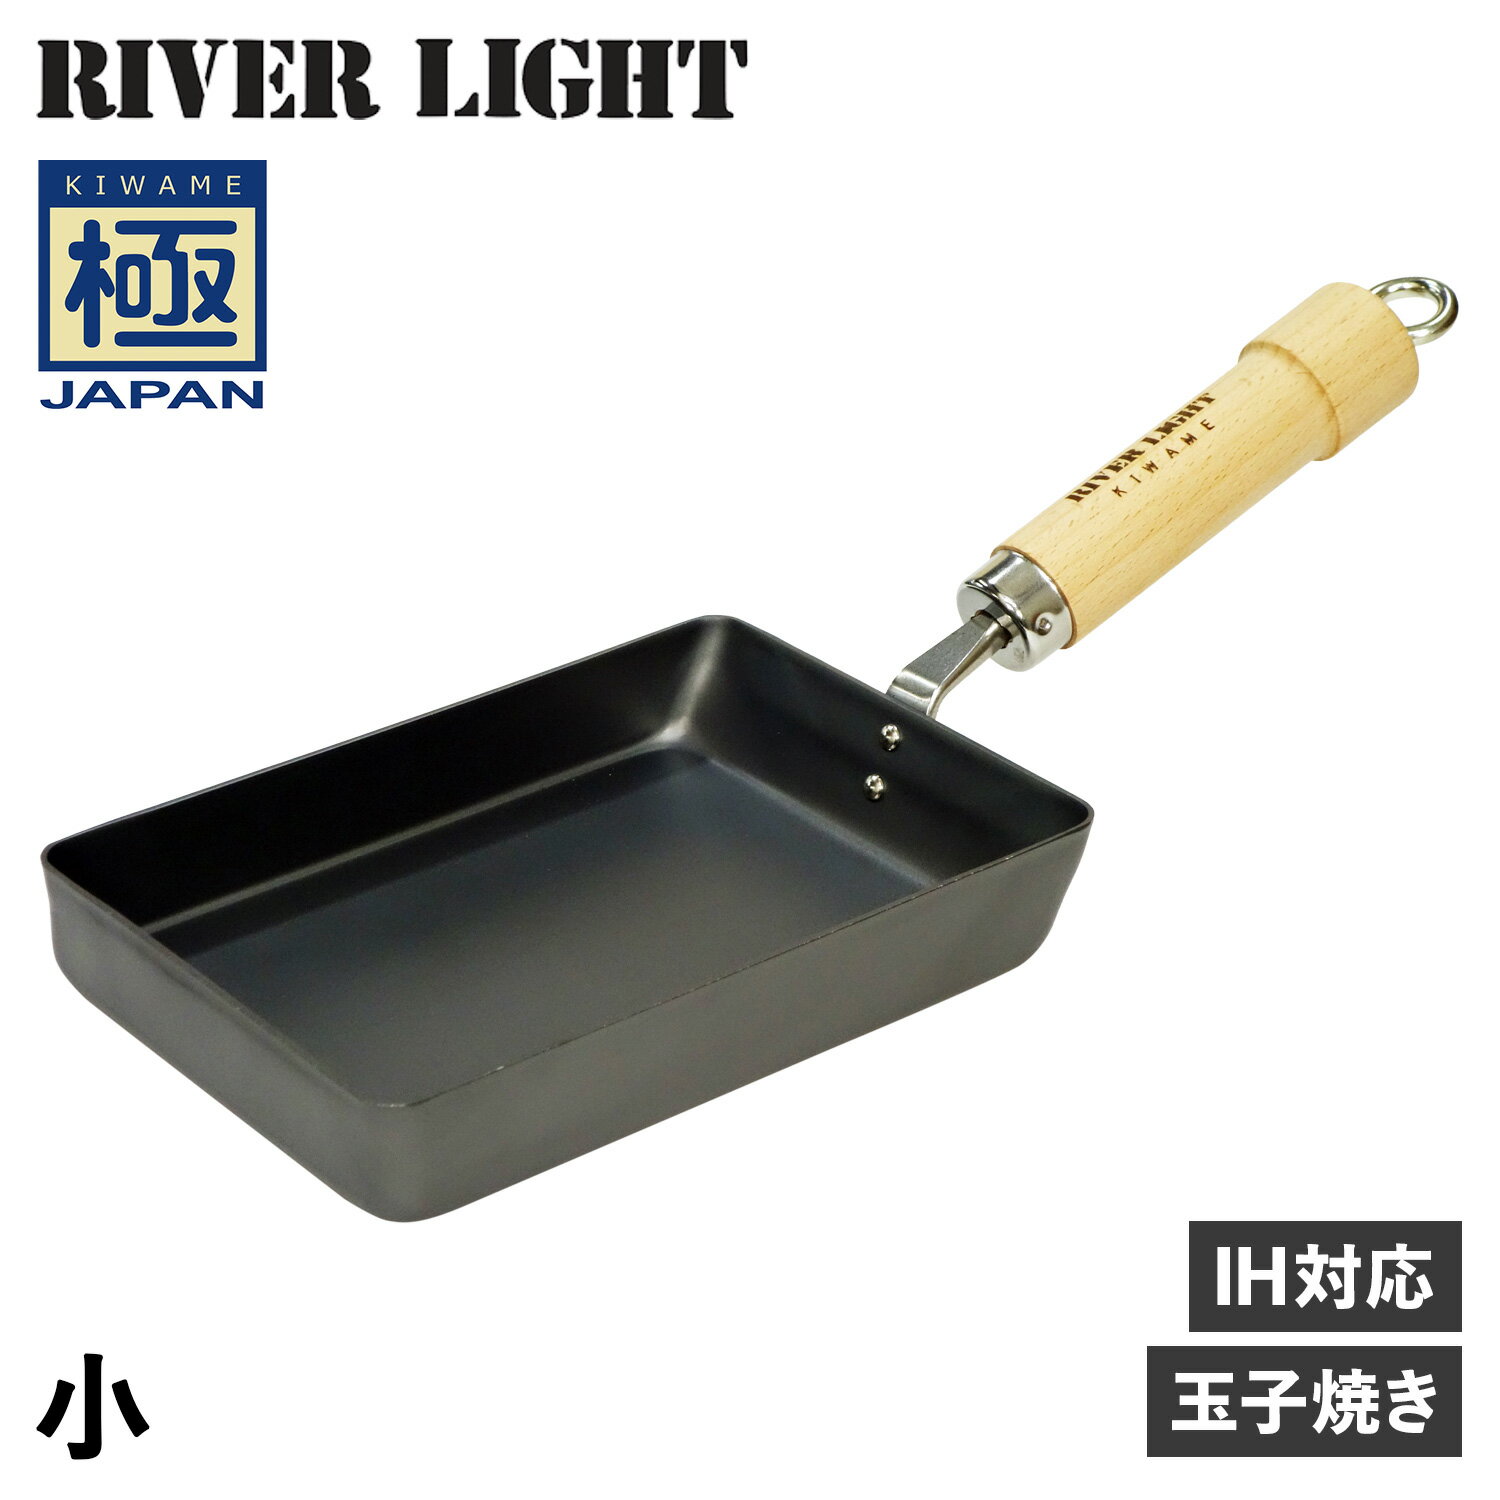 RIVER LIGHT 極JAPAN リバーライト 極 卵焼き器 フライパン 小 IH ガス対応 小さい 鉄 J1613 アウトドア